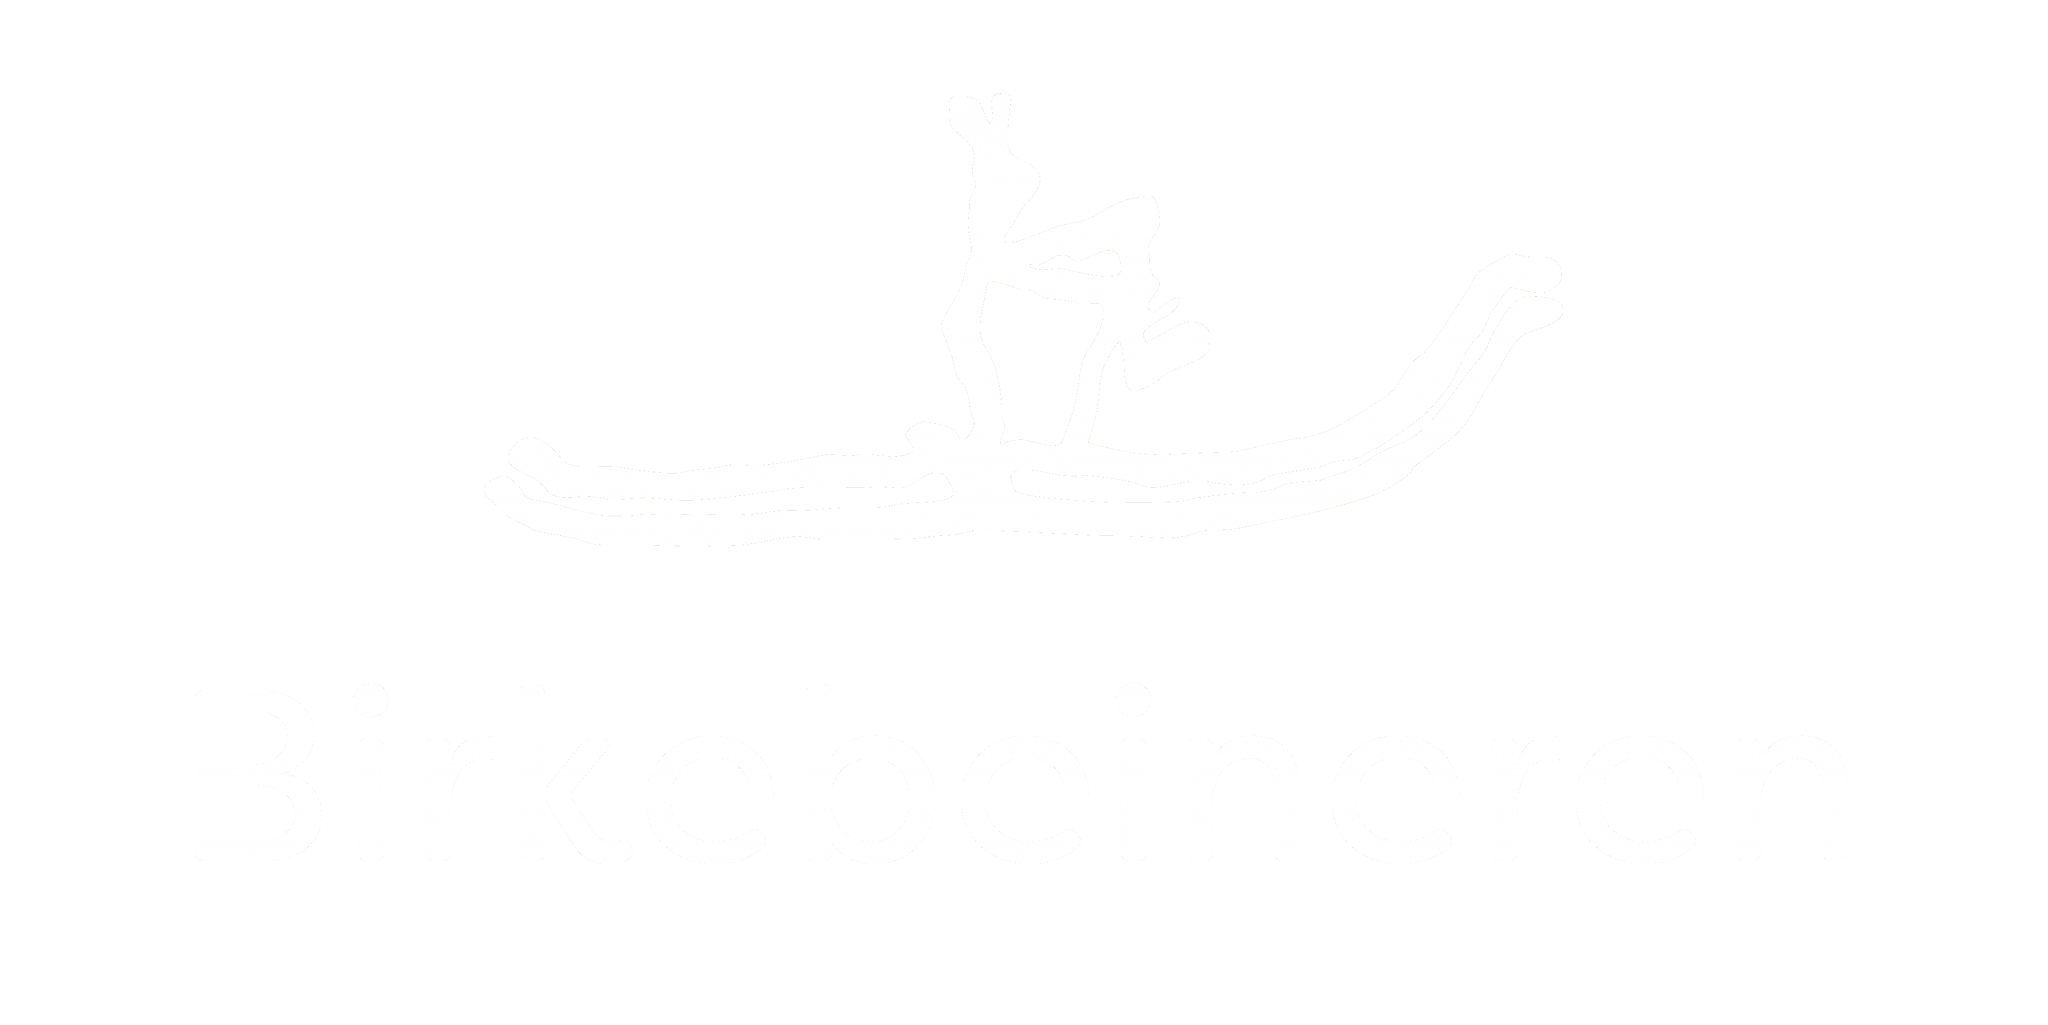 birkebeineren coloured white